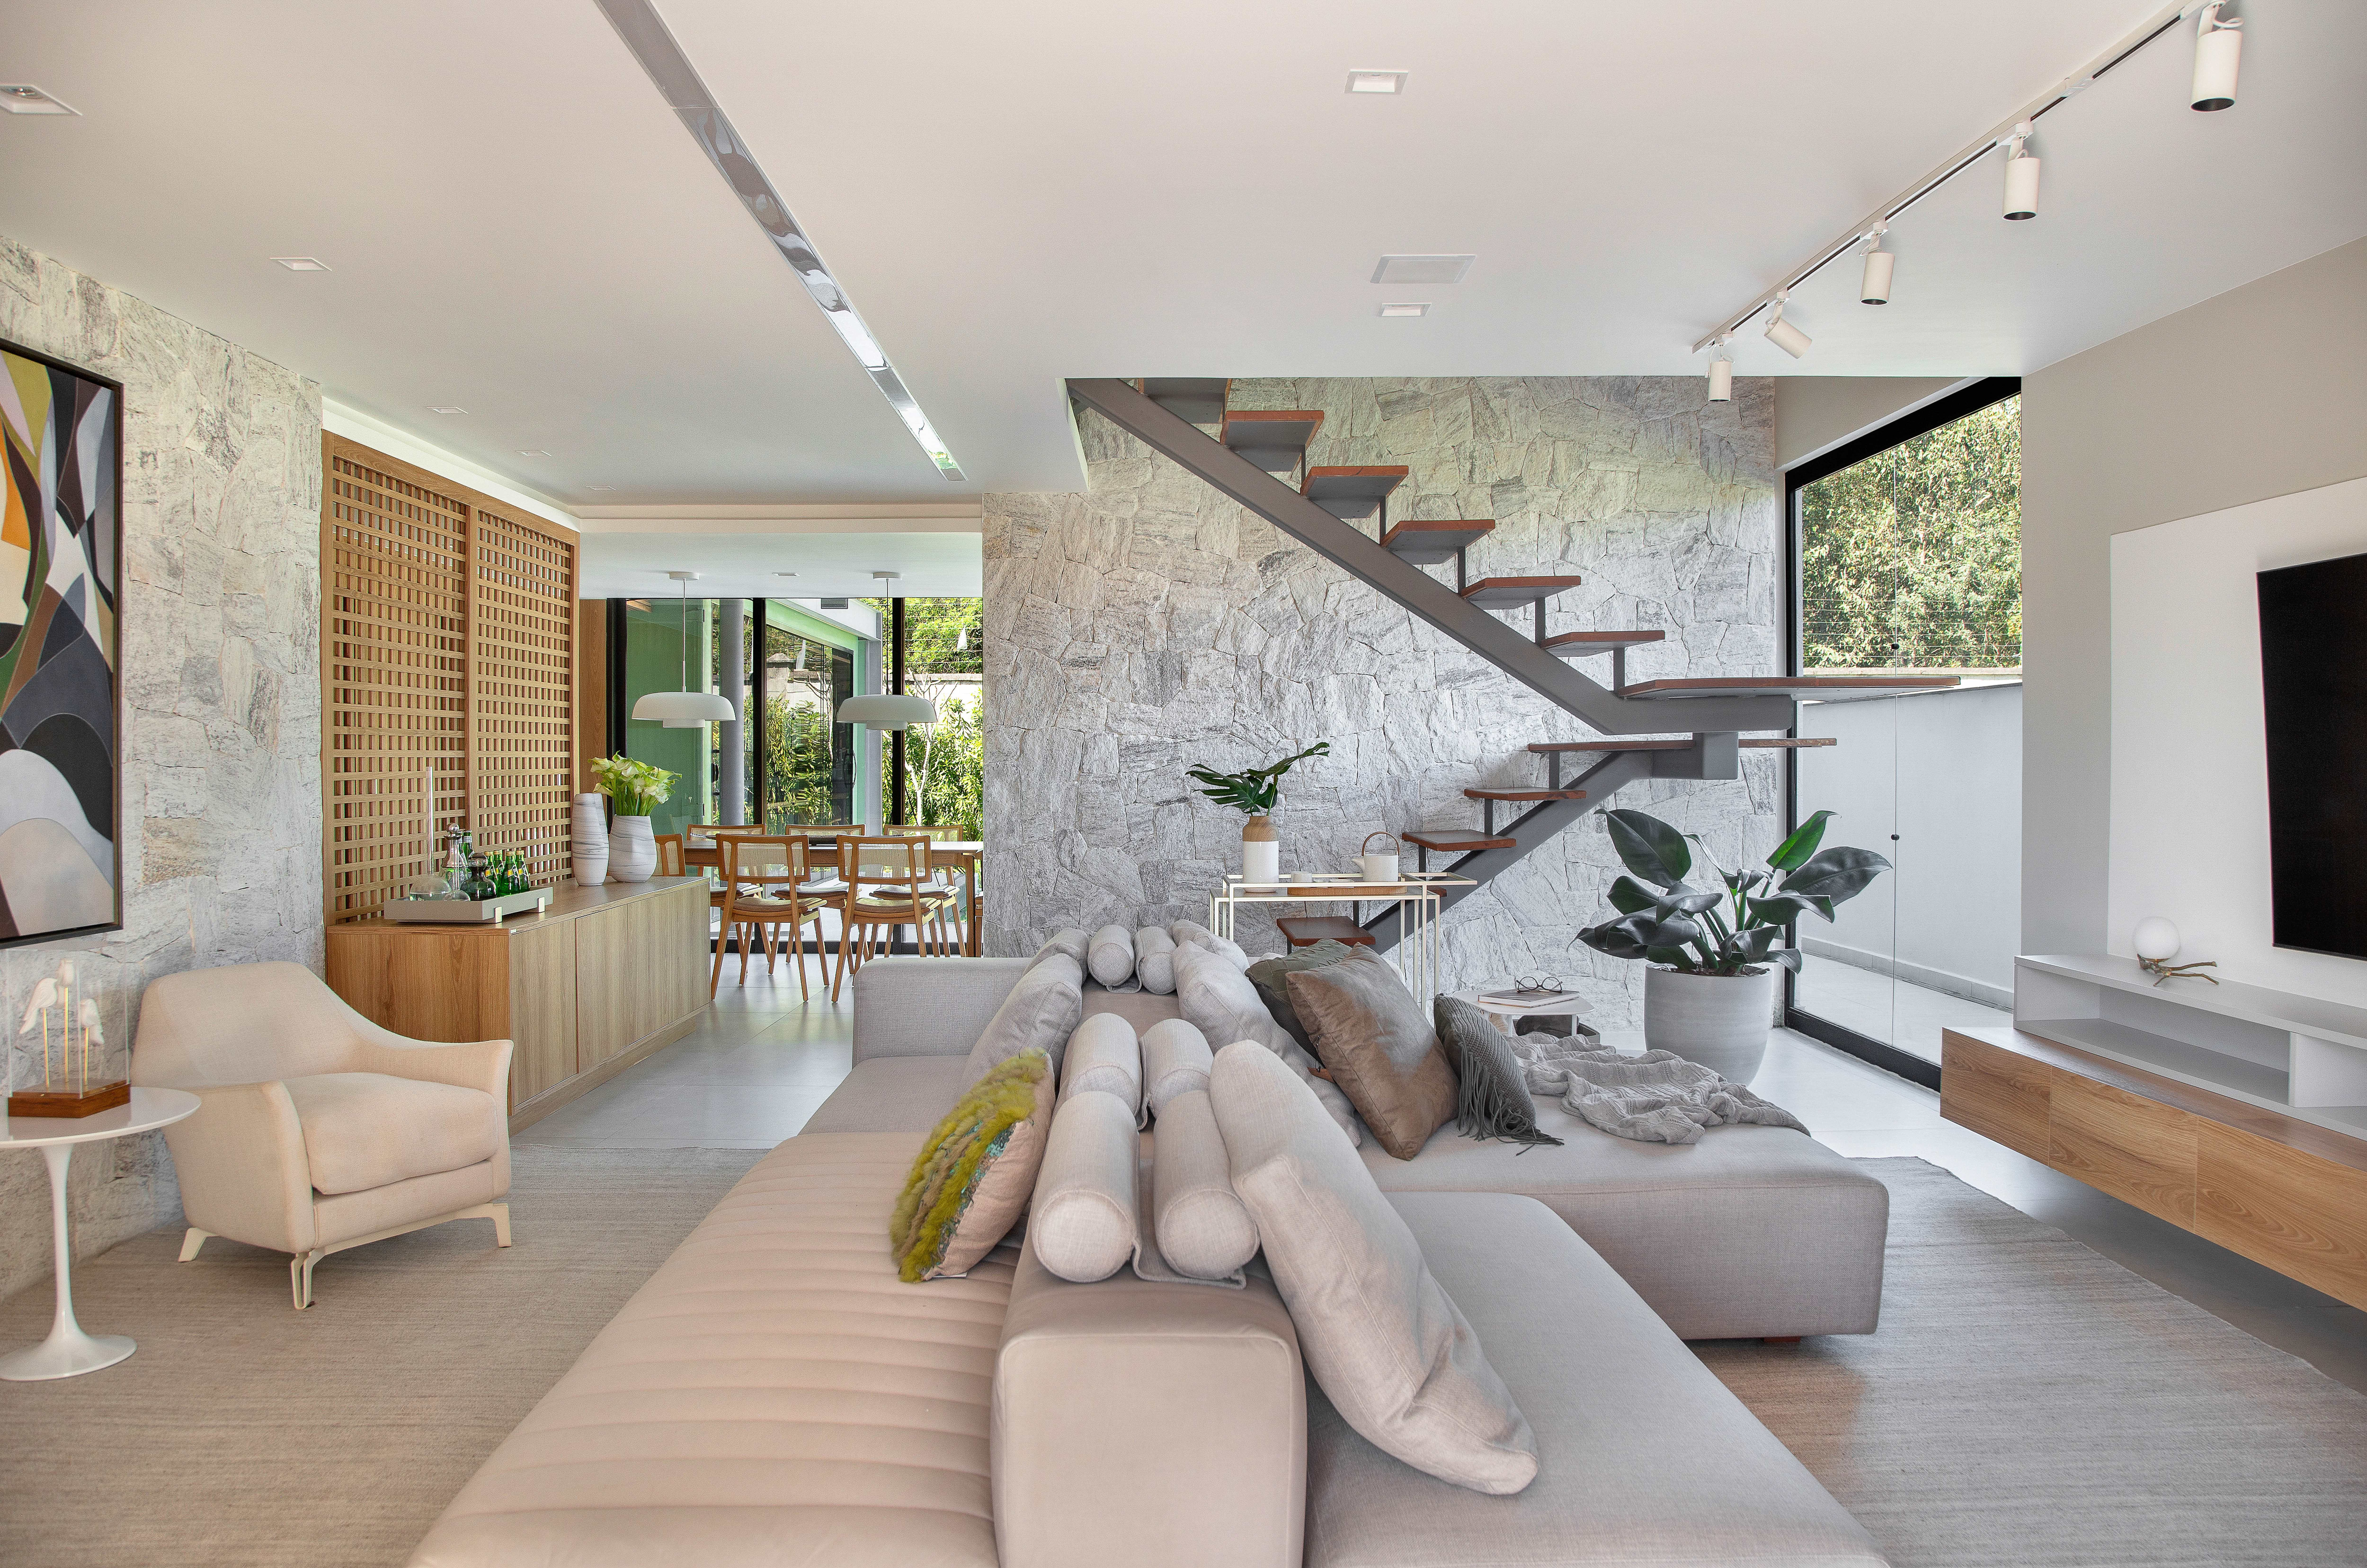 Casa de 300 m² tem cozinha verde oliva e área gourmet em contêiner. Projeto de Lana Rocha. Na foto, sala de estar com grandes janelas, escada e parede revestida de pedras.